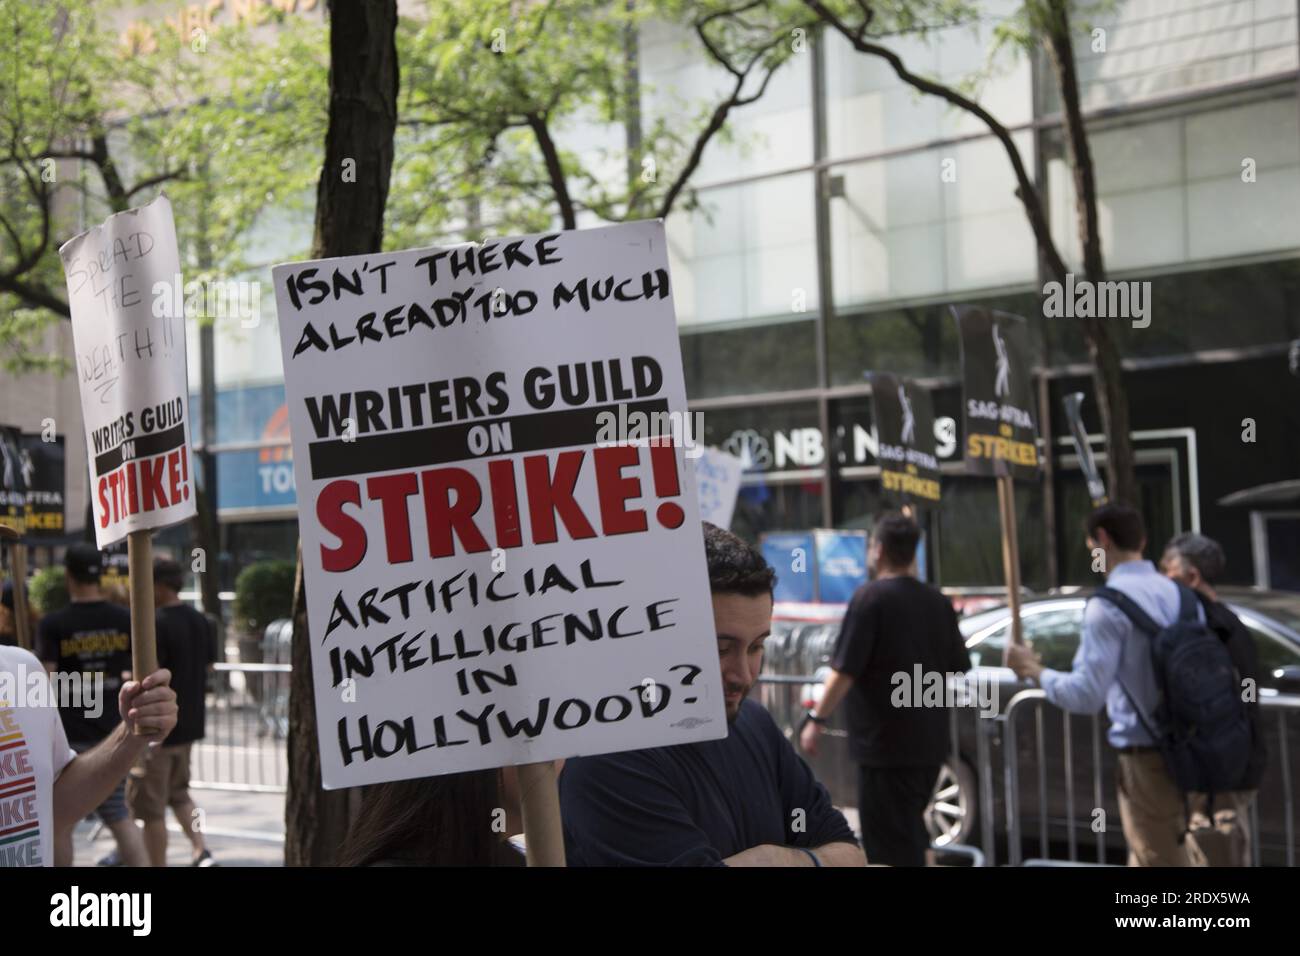 New York City: Lo sciopero continua tra gli Writers Guild of America insieme ai membri del sindacato SAG-AFTRA con linee di picchetto in più località a Manhattan. Gli scioperanti si esibiscono all'esterno degli NBC Studios sulla W. 49th Street del Rockefeller Center, paralizzando l'industria dello spettacolo. Foto Stock